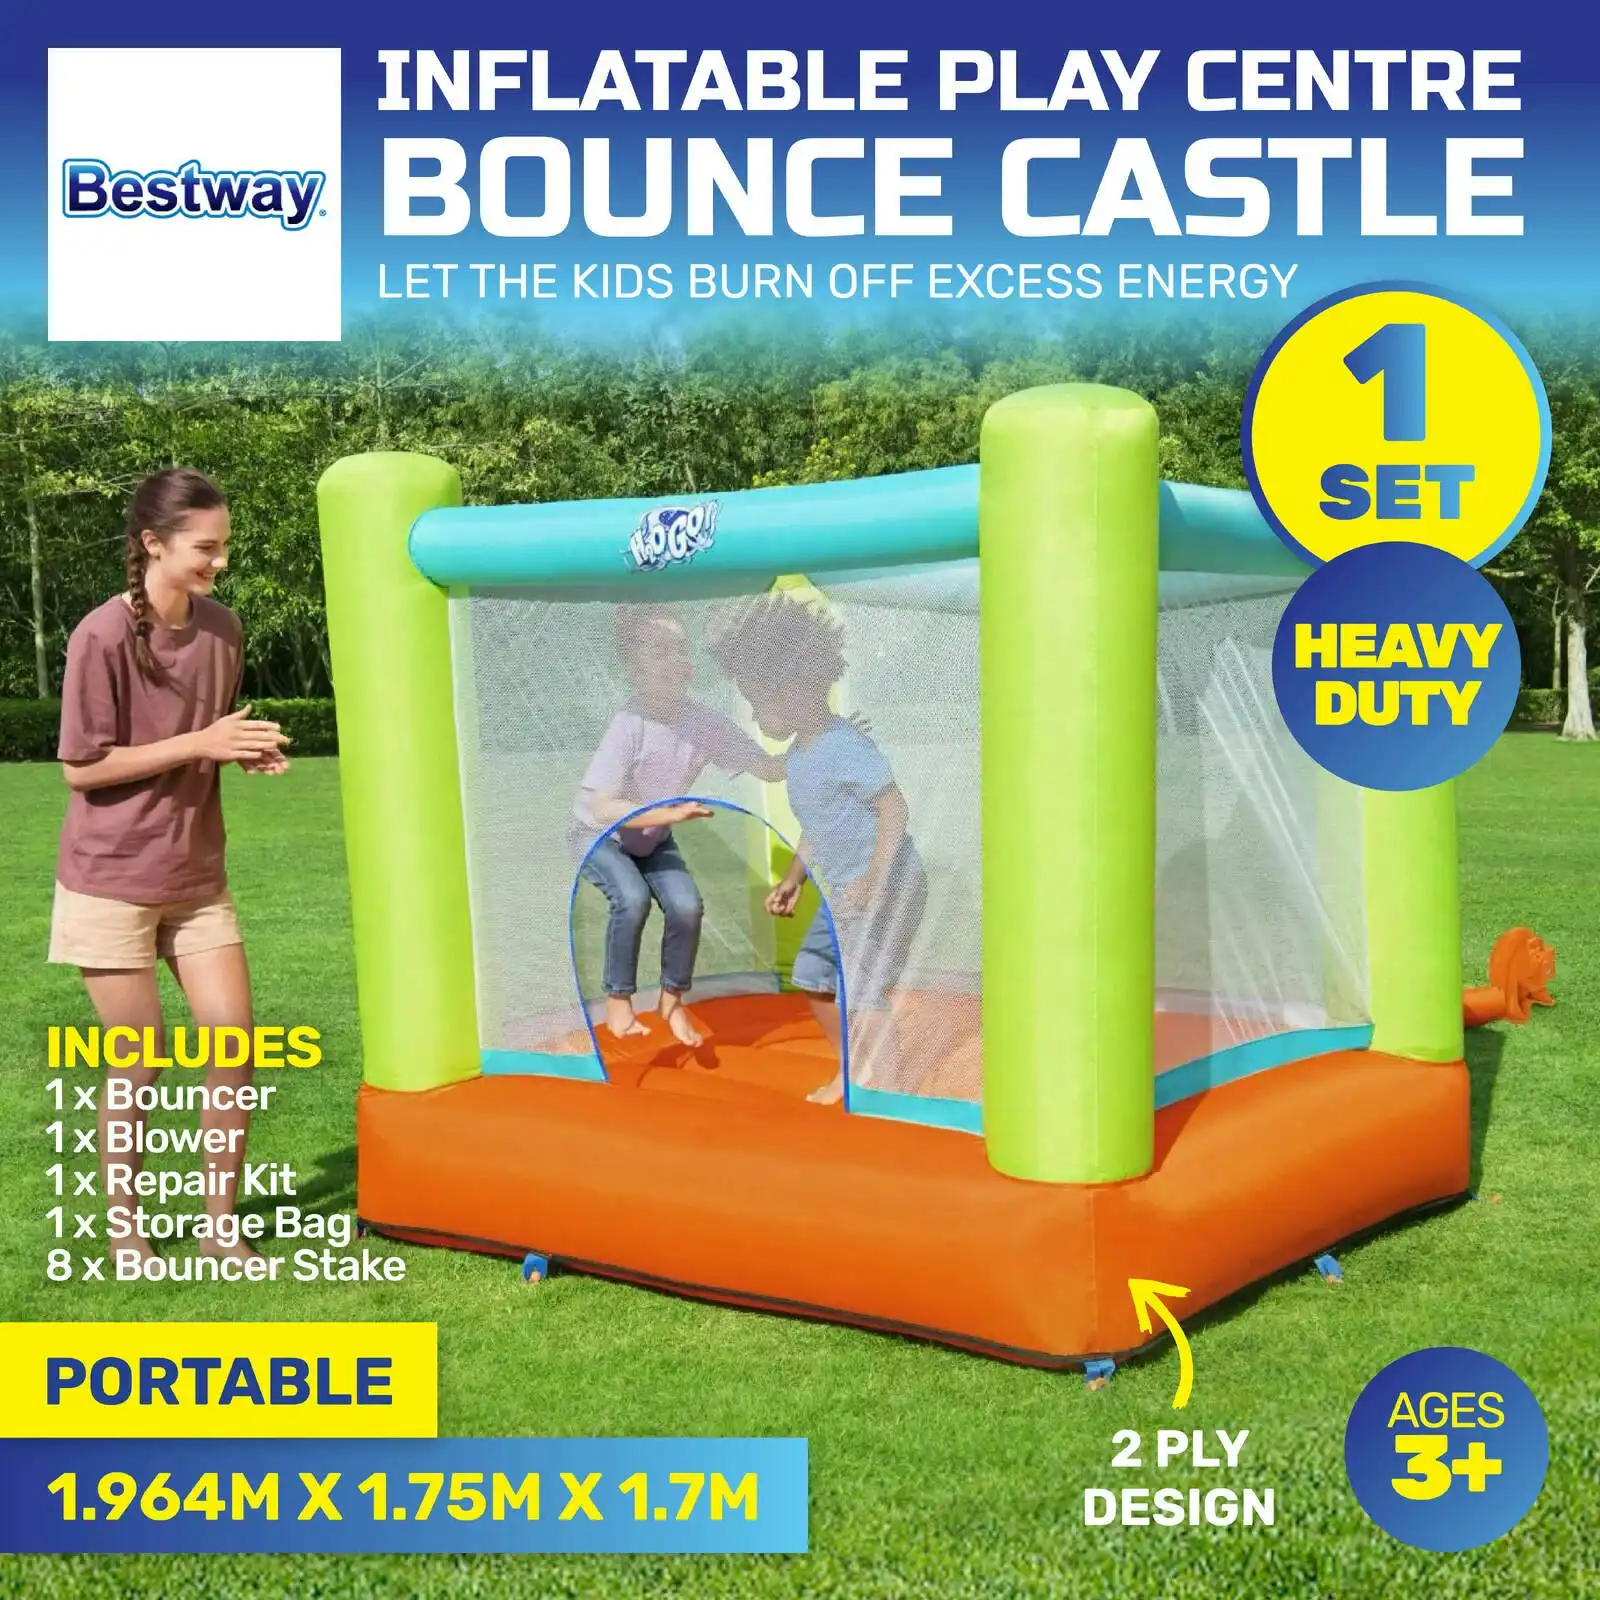 Bestway 1.75 x 1.94m Inflatable Bounce Castle Play Centre Portable PVC